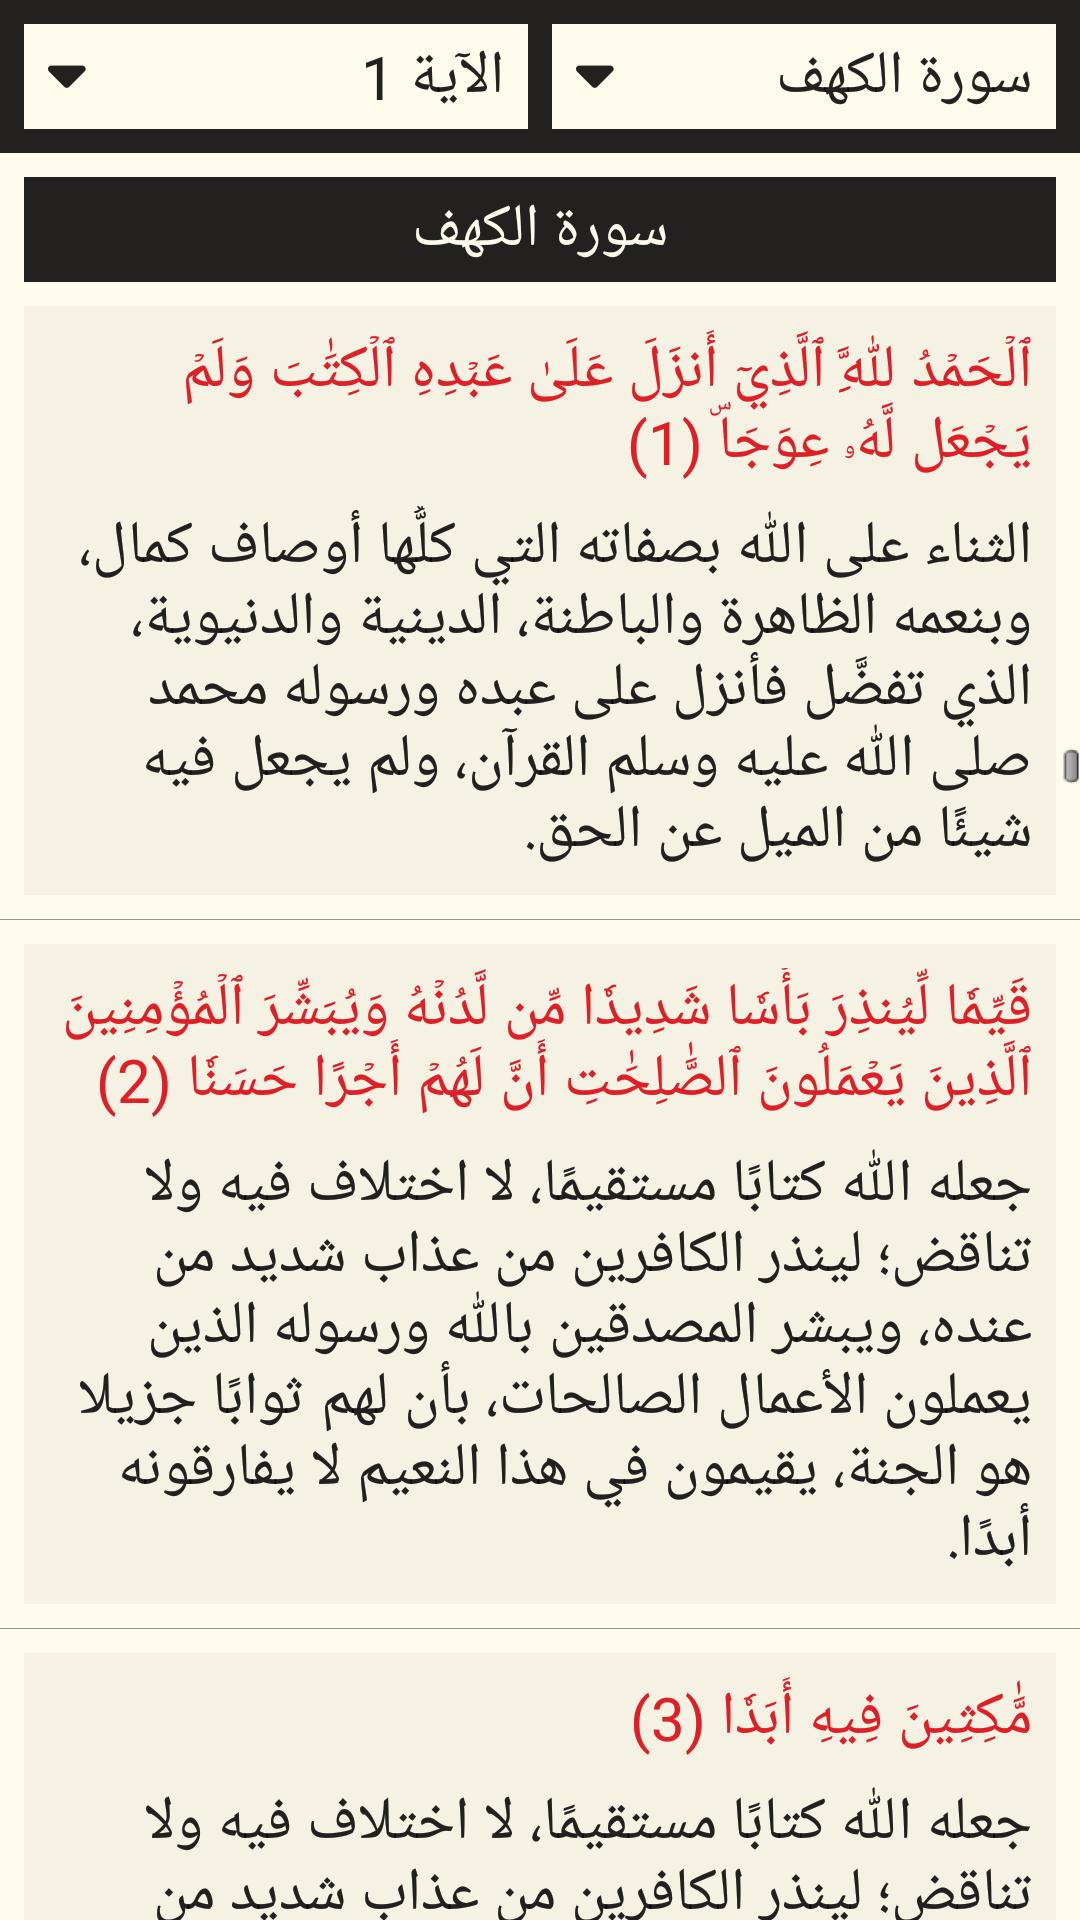 القرآن الكريم مع التفسير وميزات أخرى 6.1 Screenshot 6